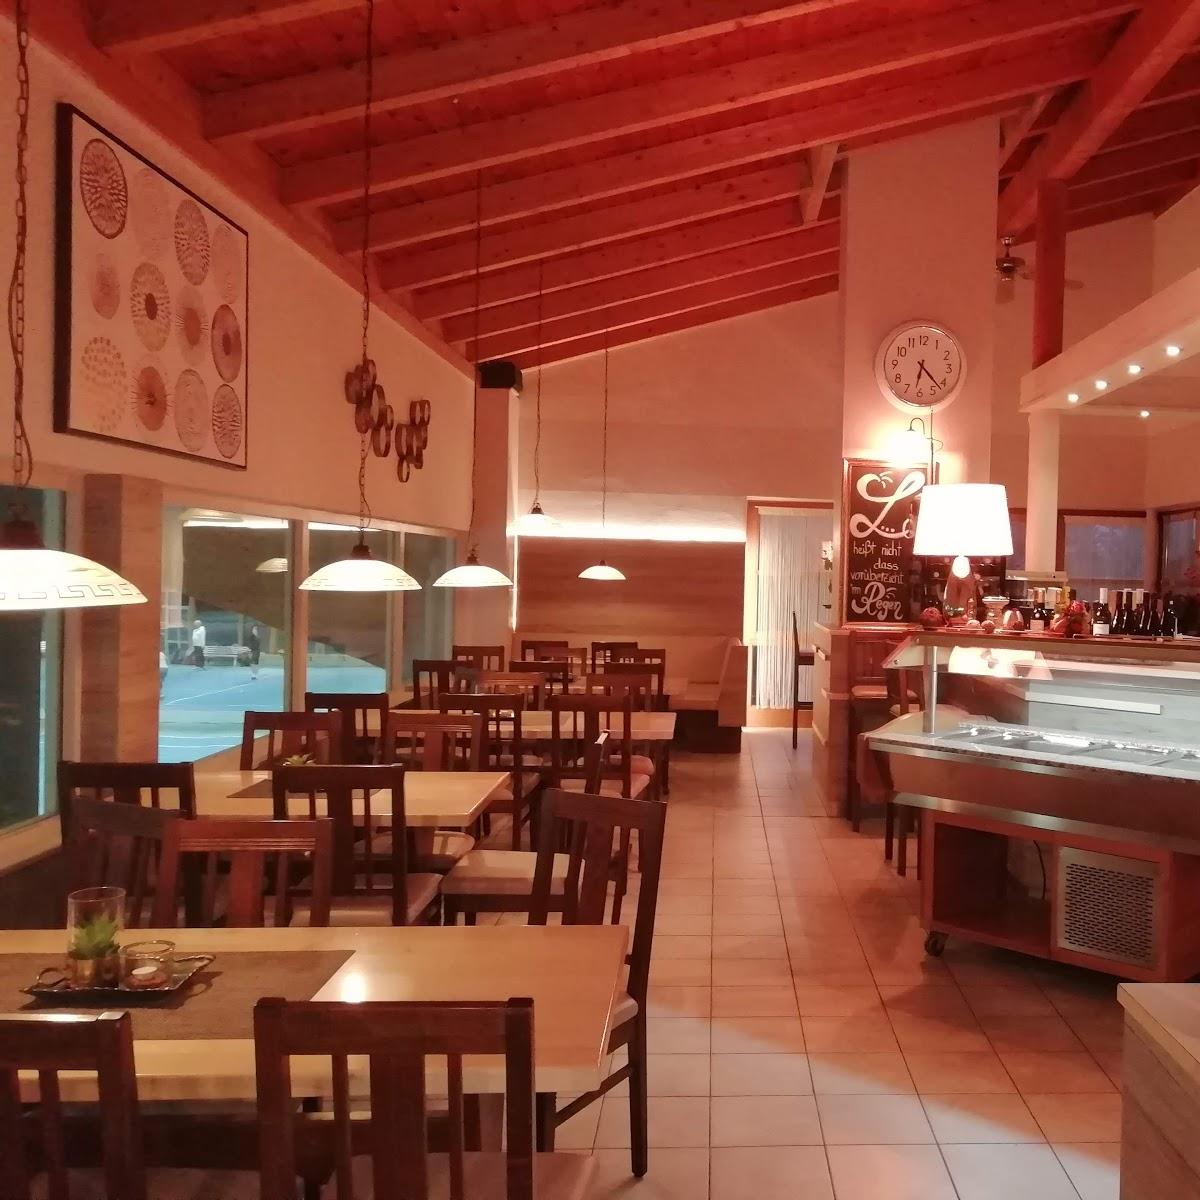 Restaurant "LUNA ROSSA Ristorante Pizzeria" in Passau